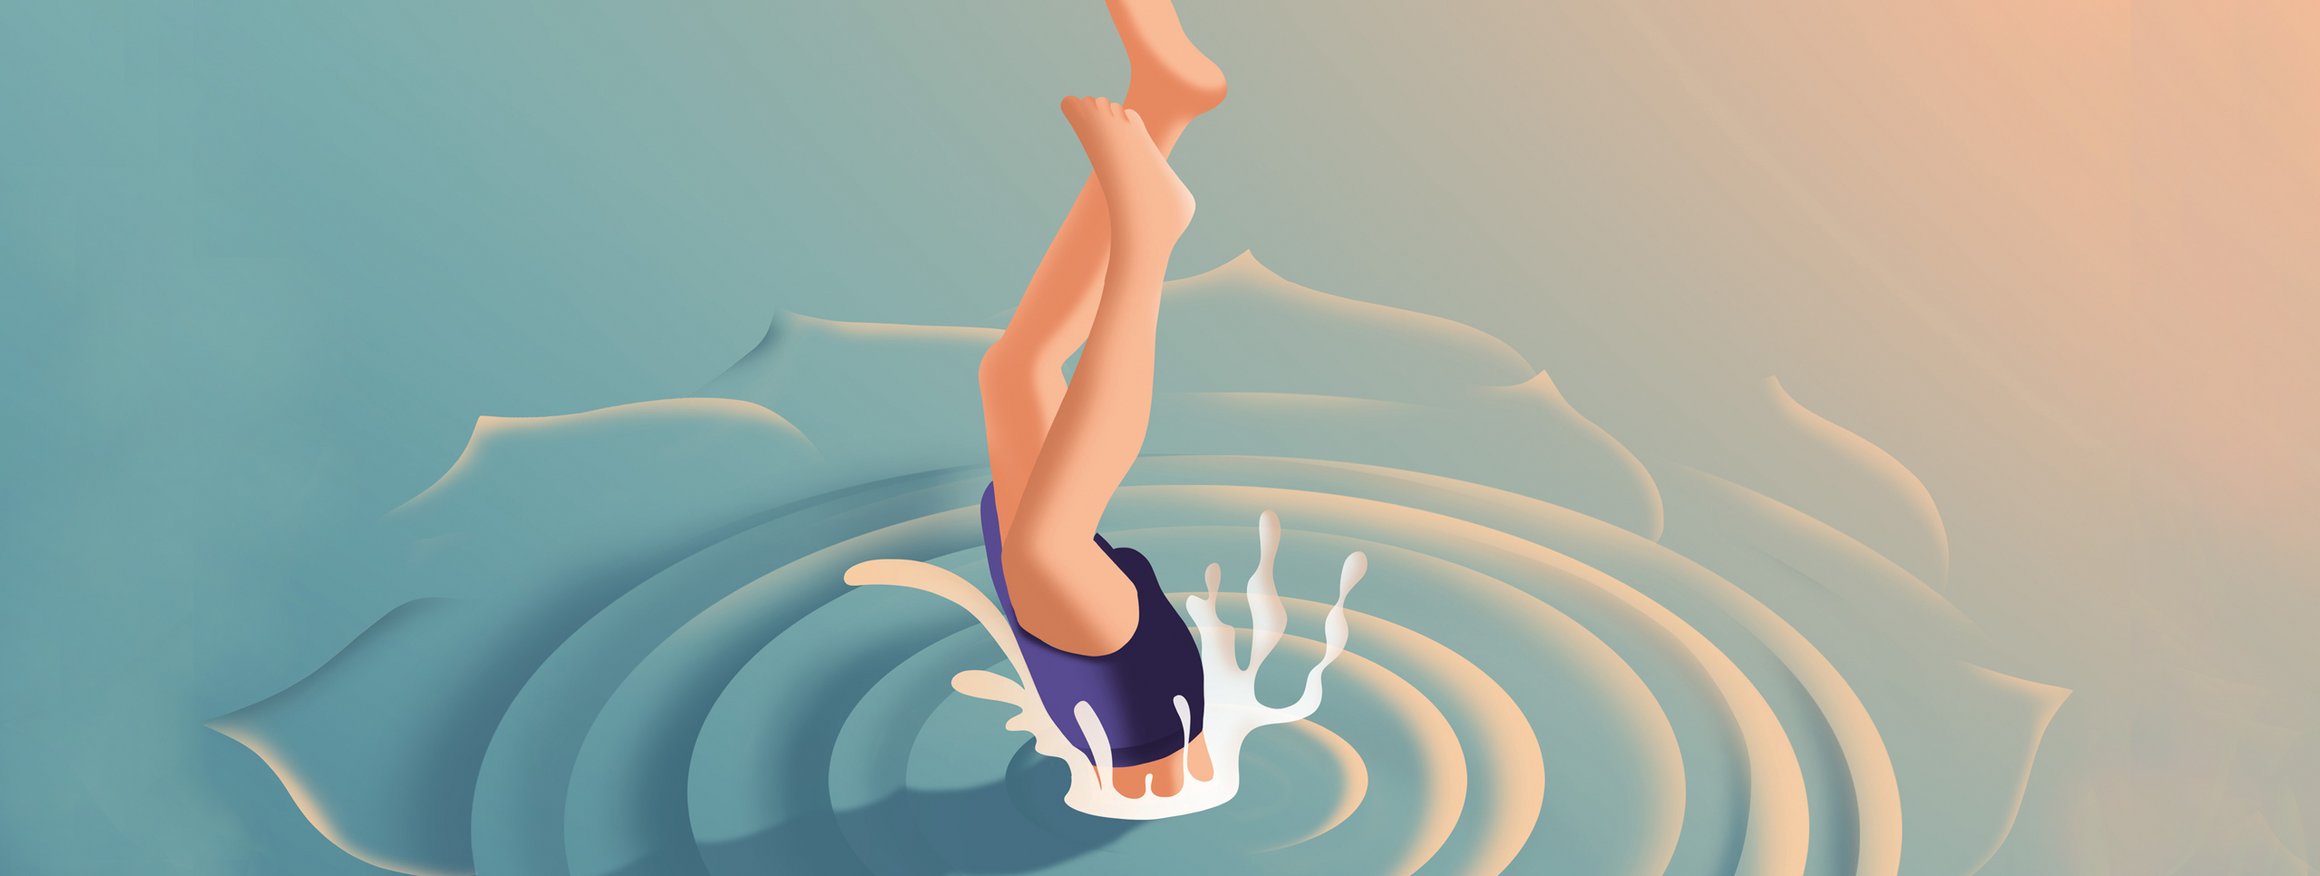 Die Illustration zeigt einen Mann mit blauer Badehose, der in sauberes Wasser eintaucht, mit dem Kopf zuerst